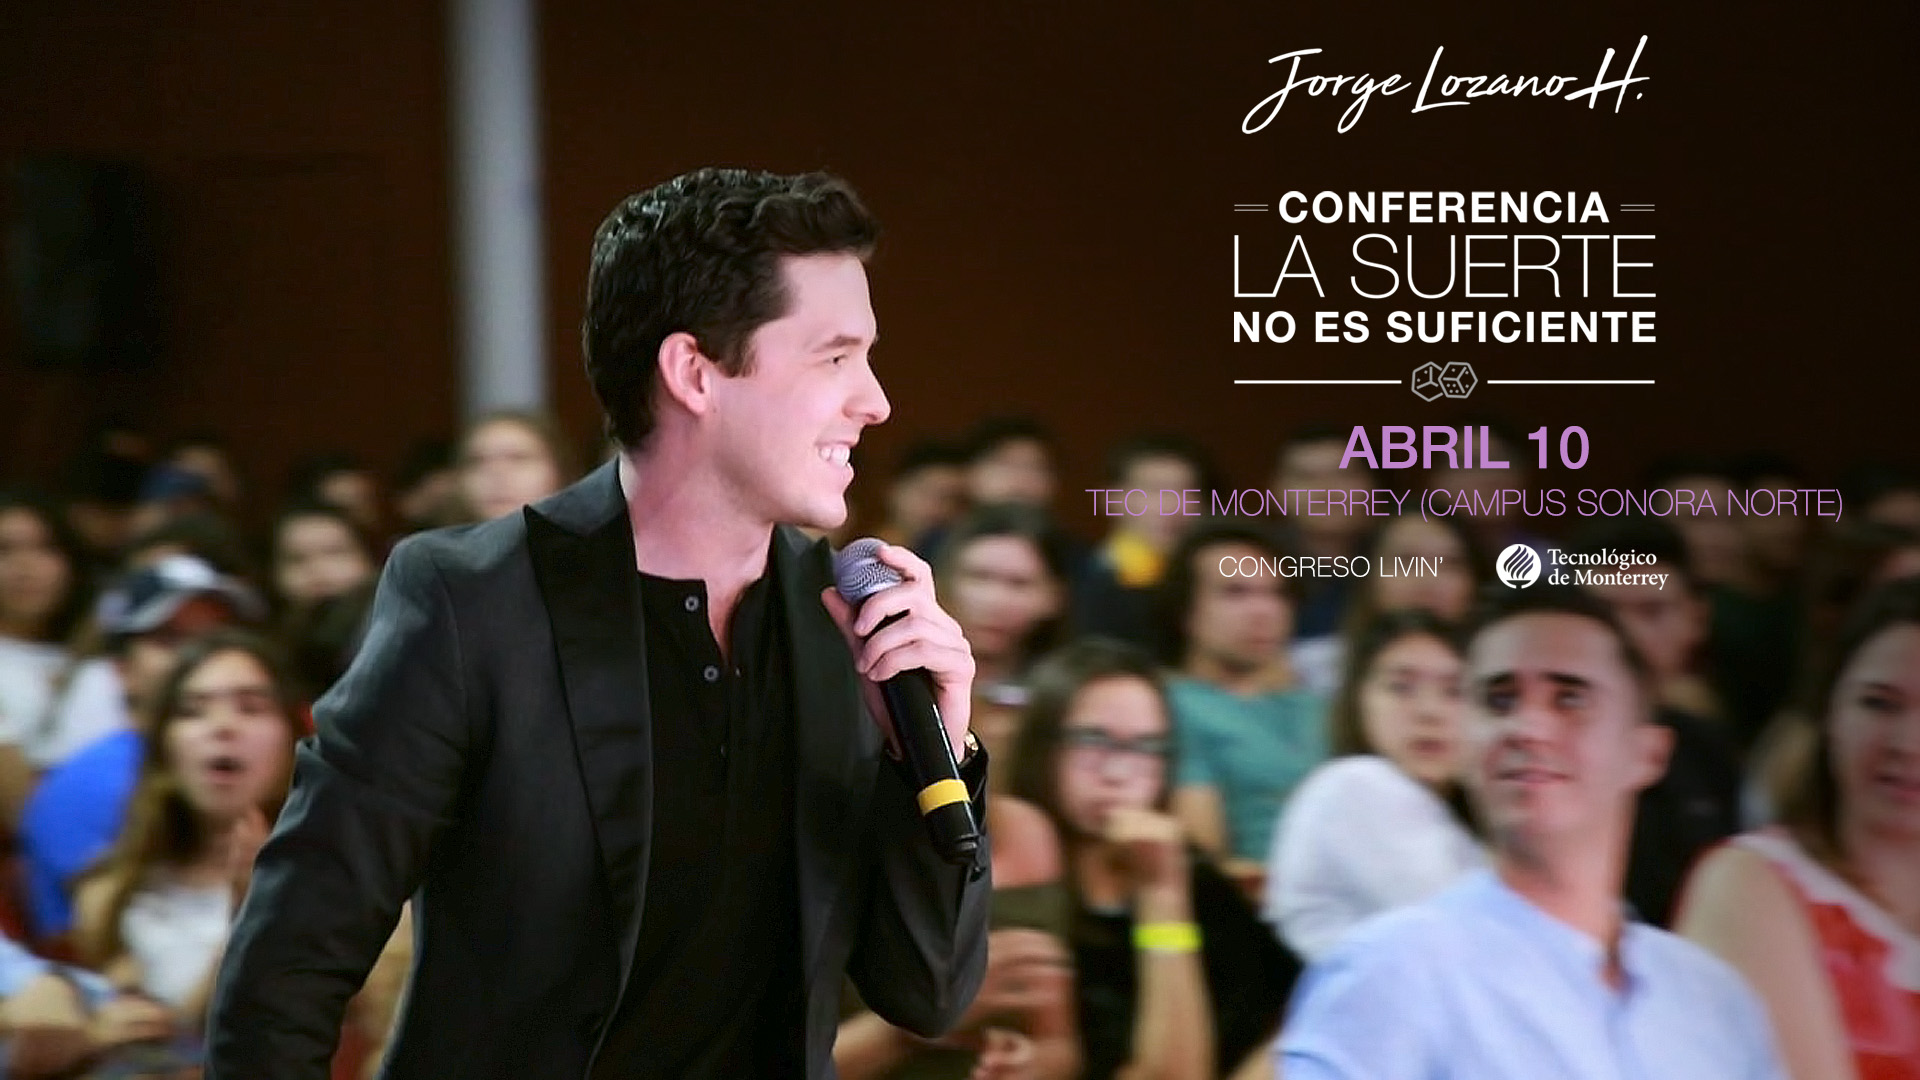 Jorge Lozano H. — Presentó con éxito su conferencia ante el Congreso LIVING en TEC Sonora